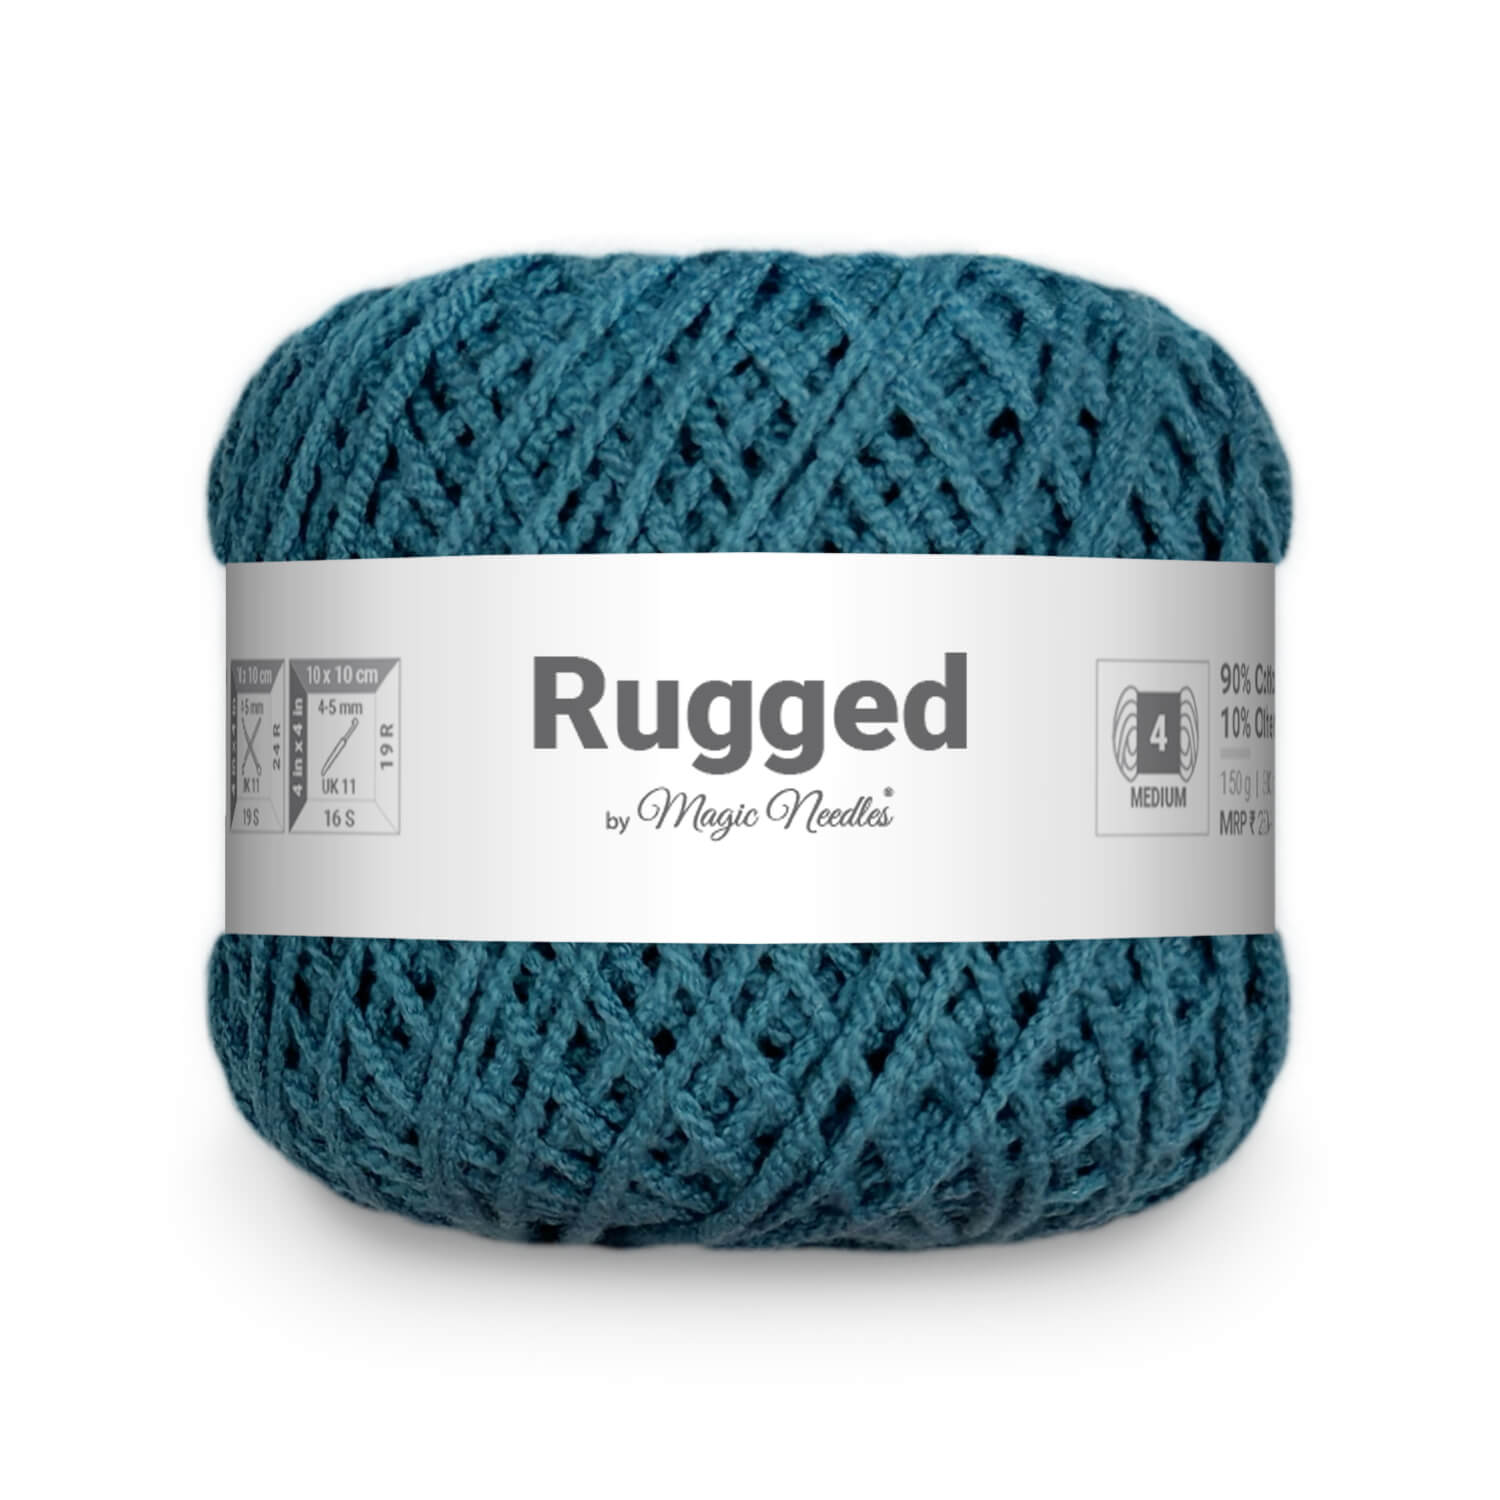 Rugged Yarn - Greyish Blue 65